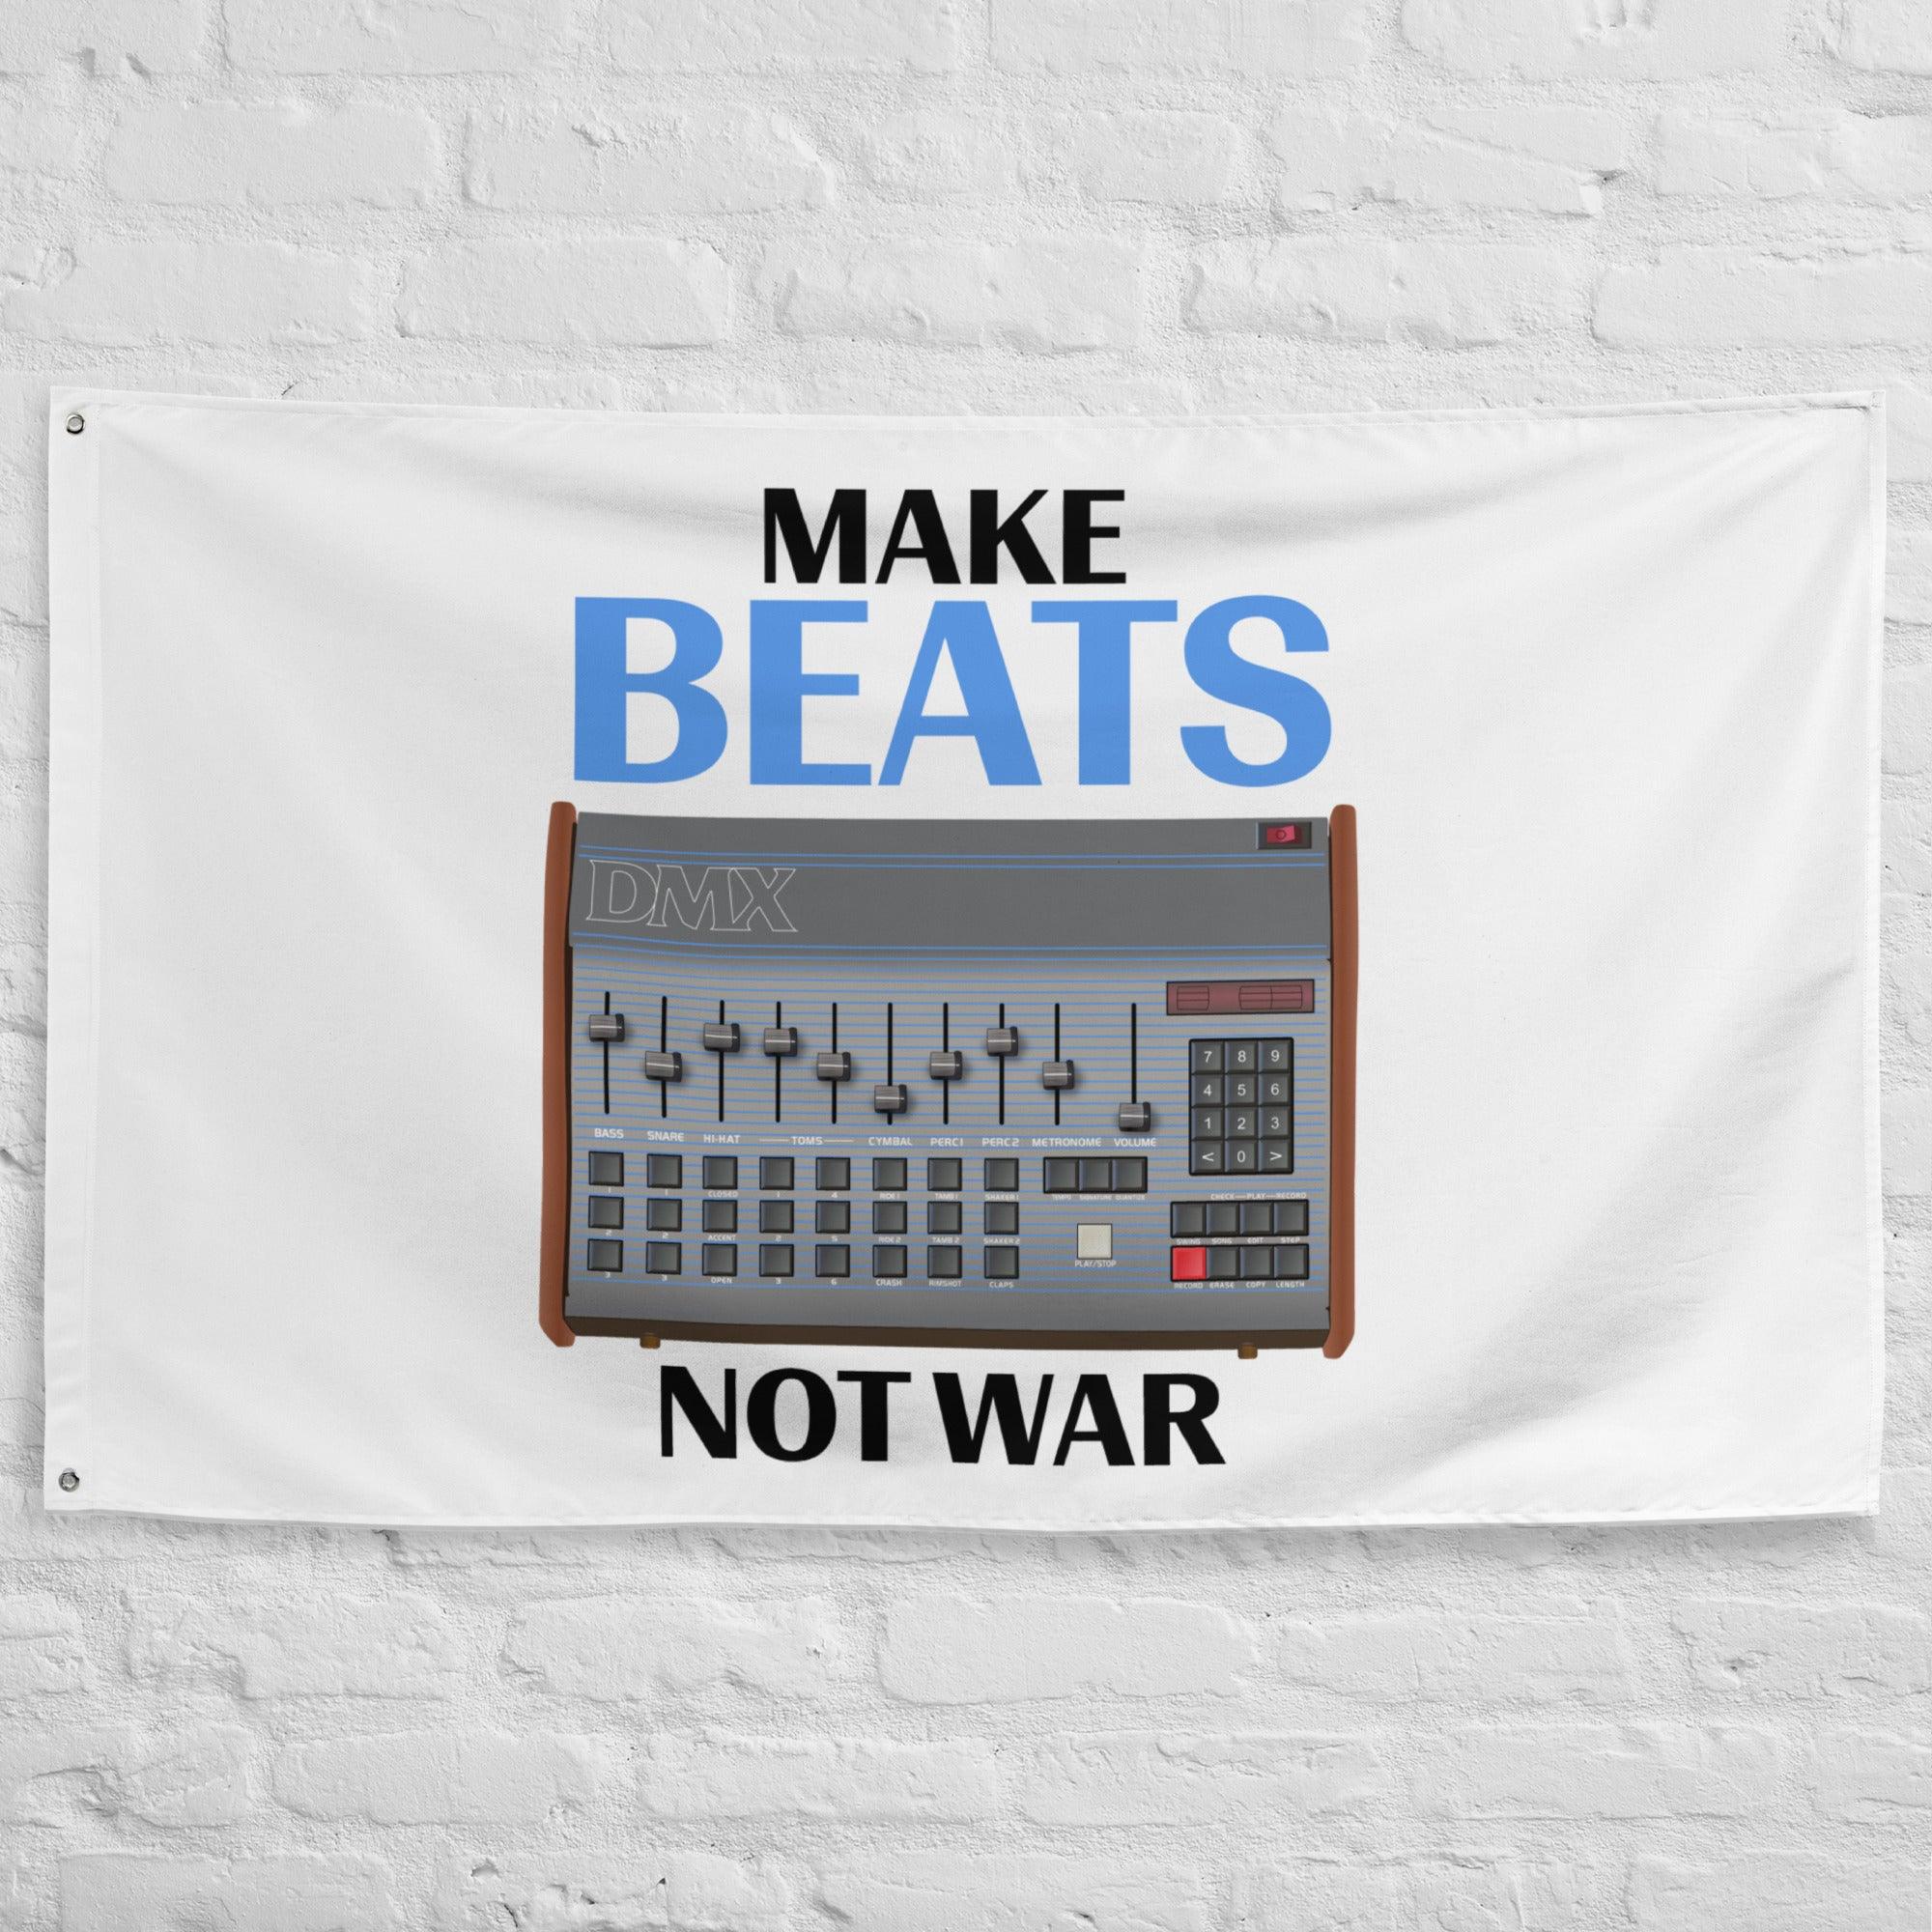 Oberheim DMX Drum Machine Artist Rendition "Make Beats Not War" Flag (Horizontal) - Tedeschi Studio, LLC.